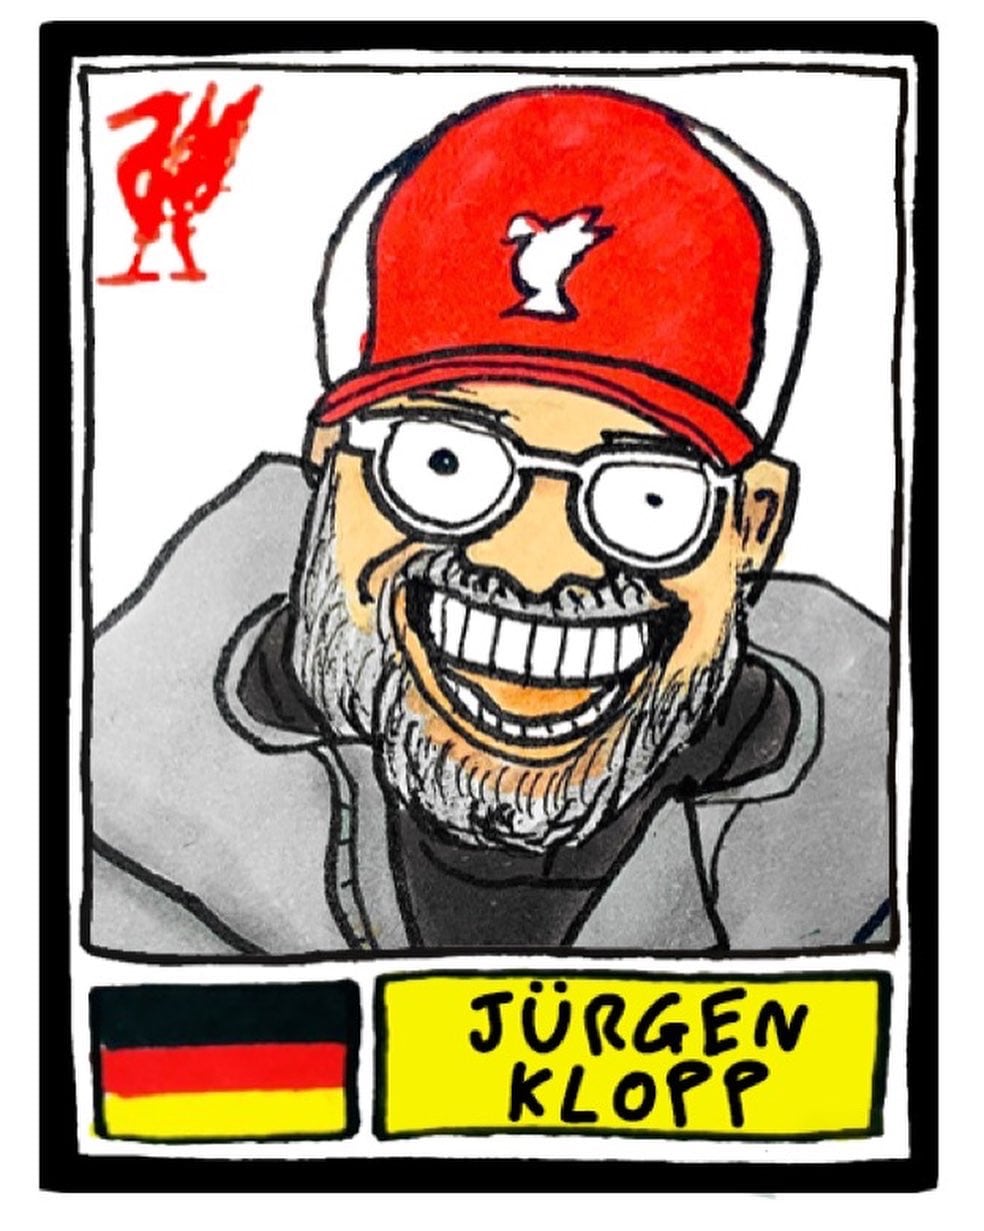 Badly drawn image of Jurgen Klopp